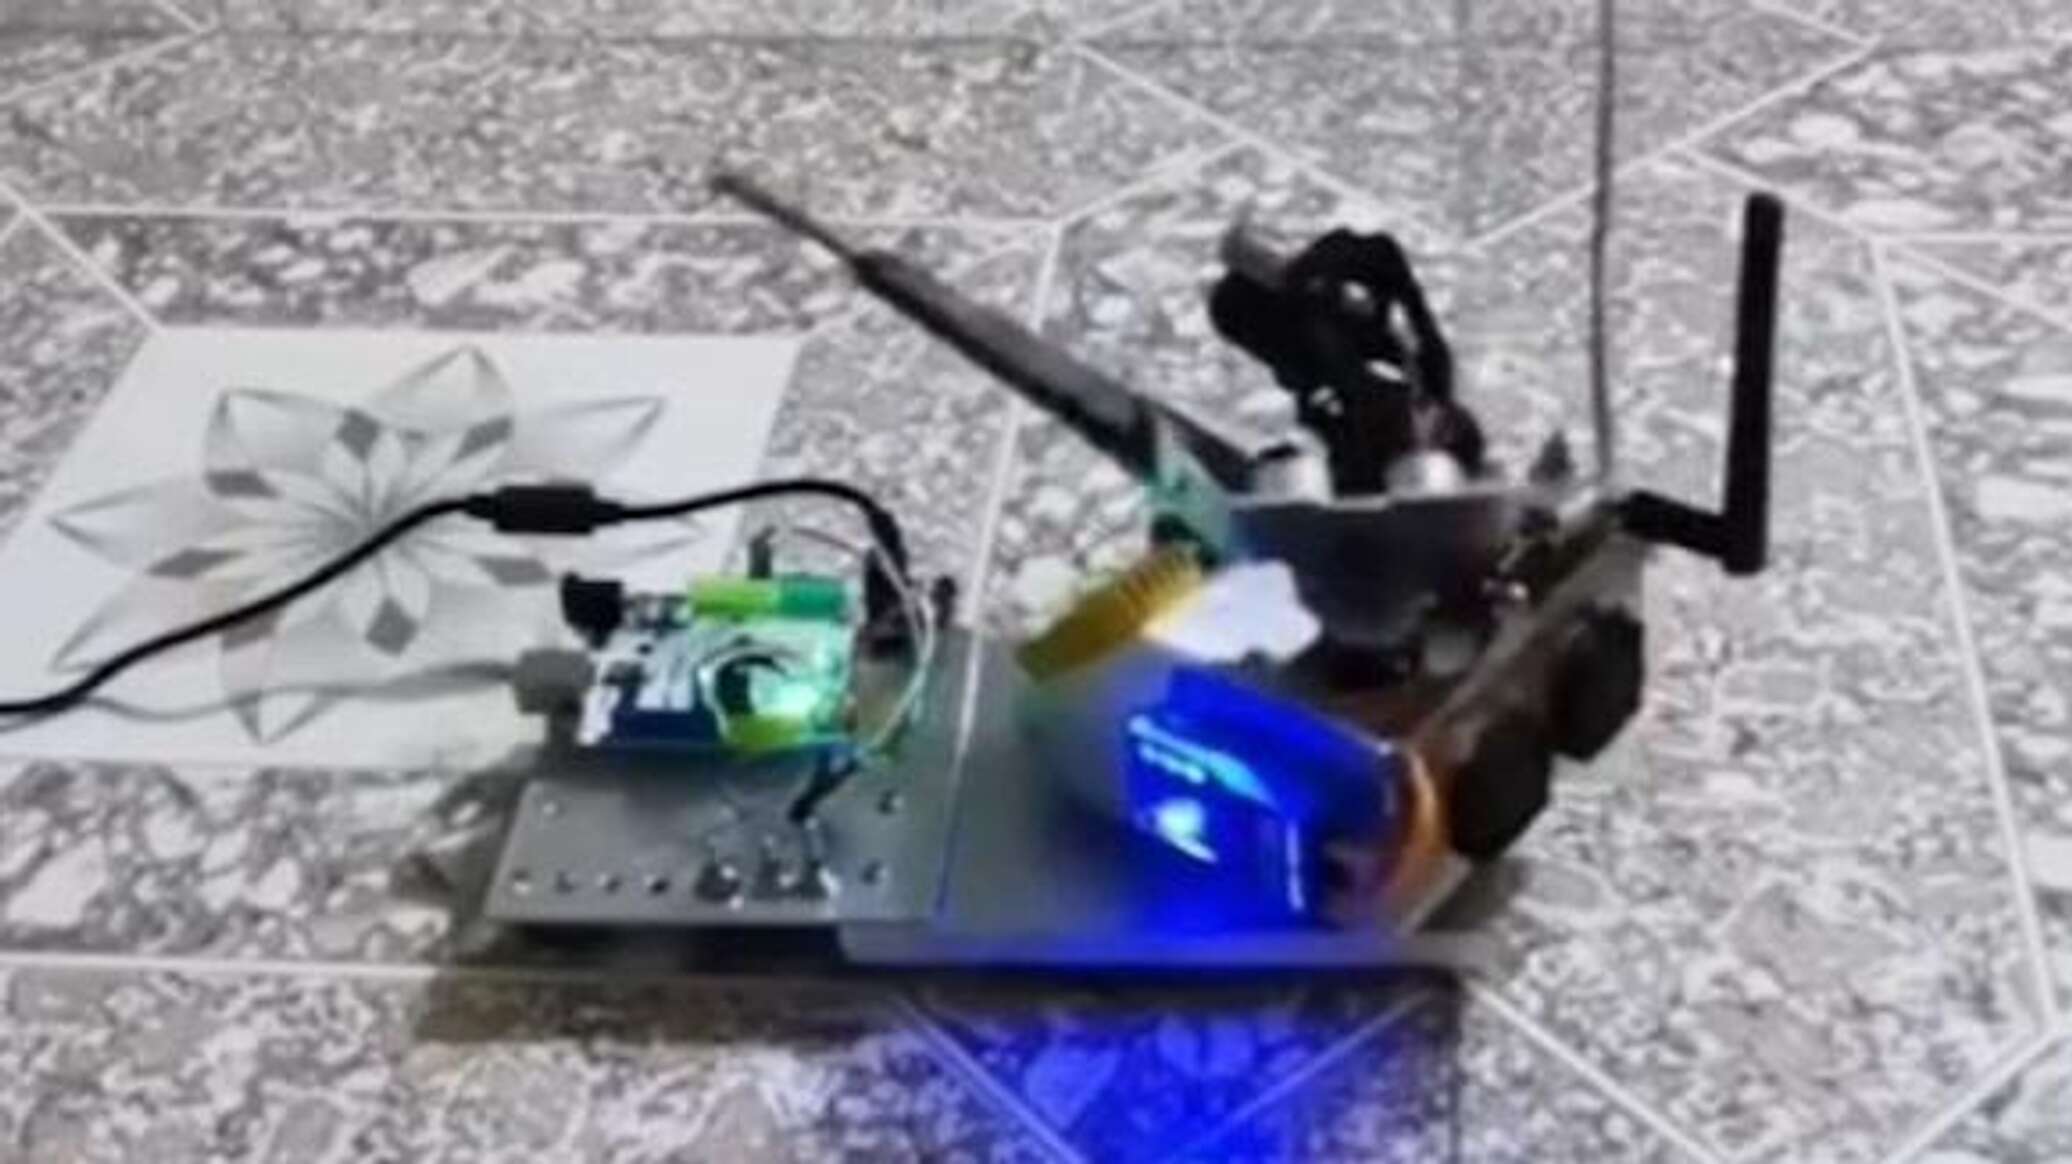 مهندس صيني يبتكر "مضادا" مع رادار لصيد البعوض... فيديو